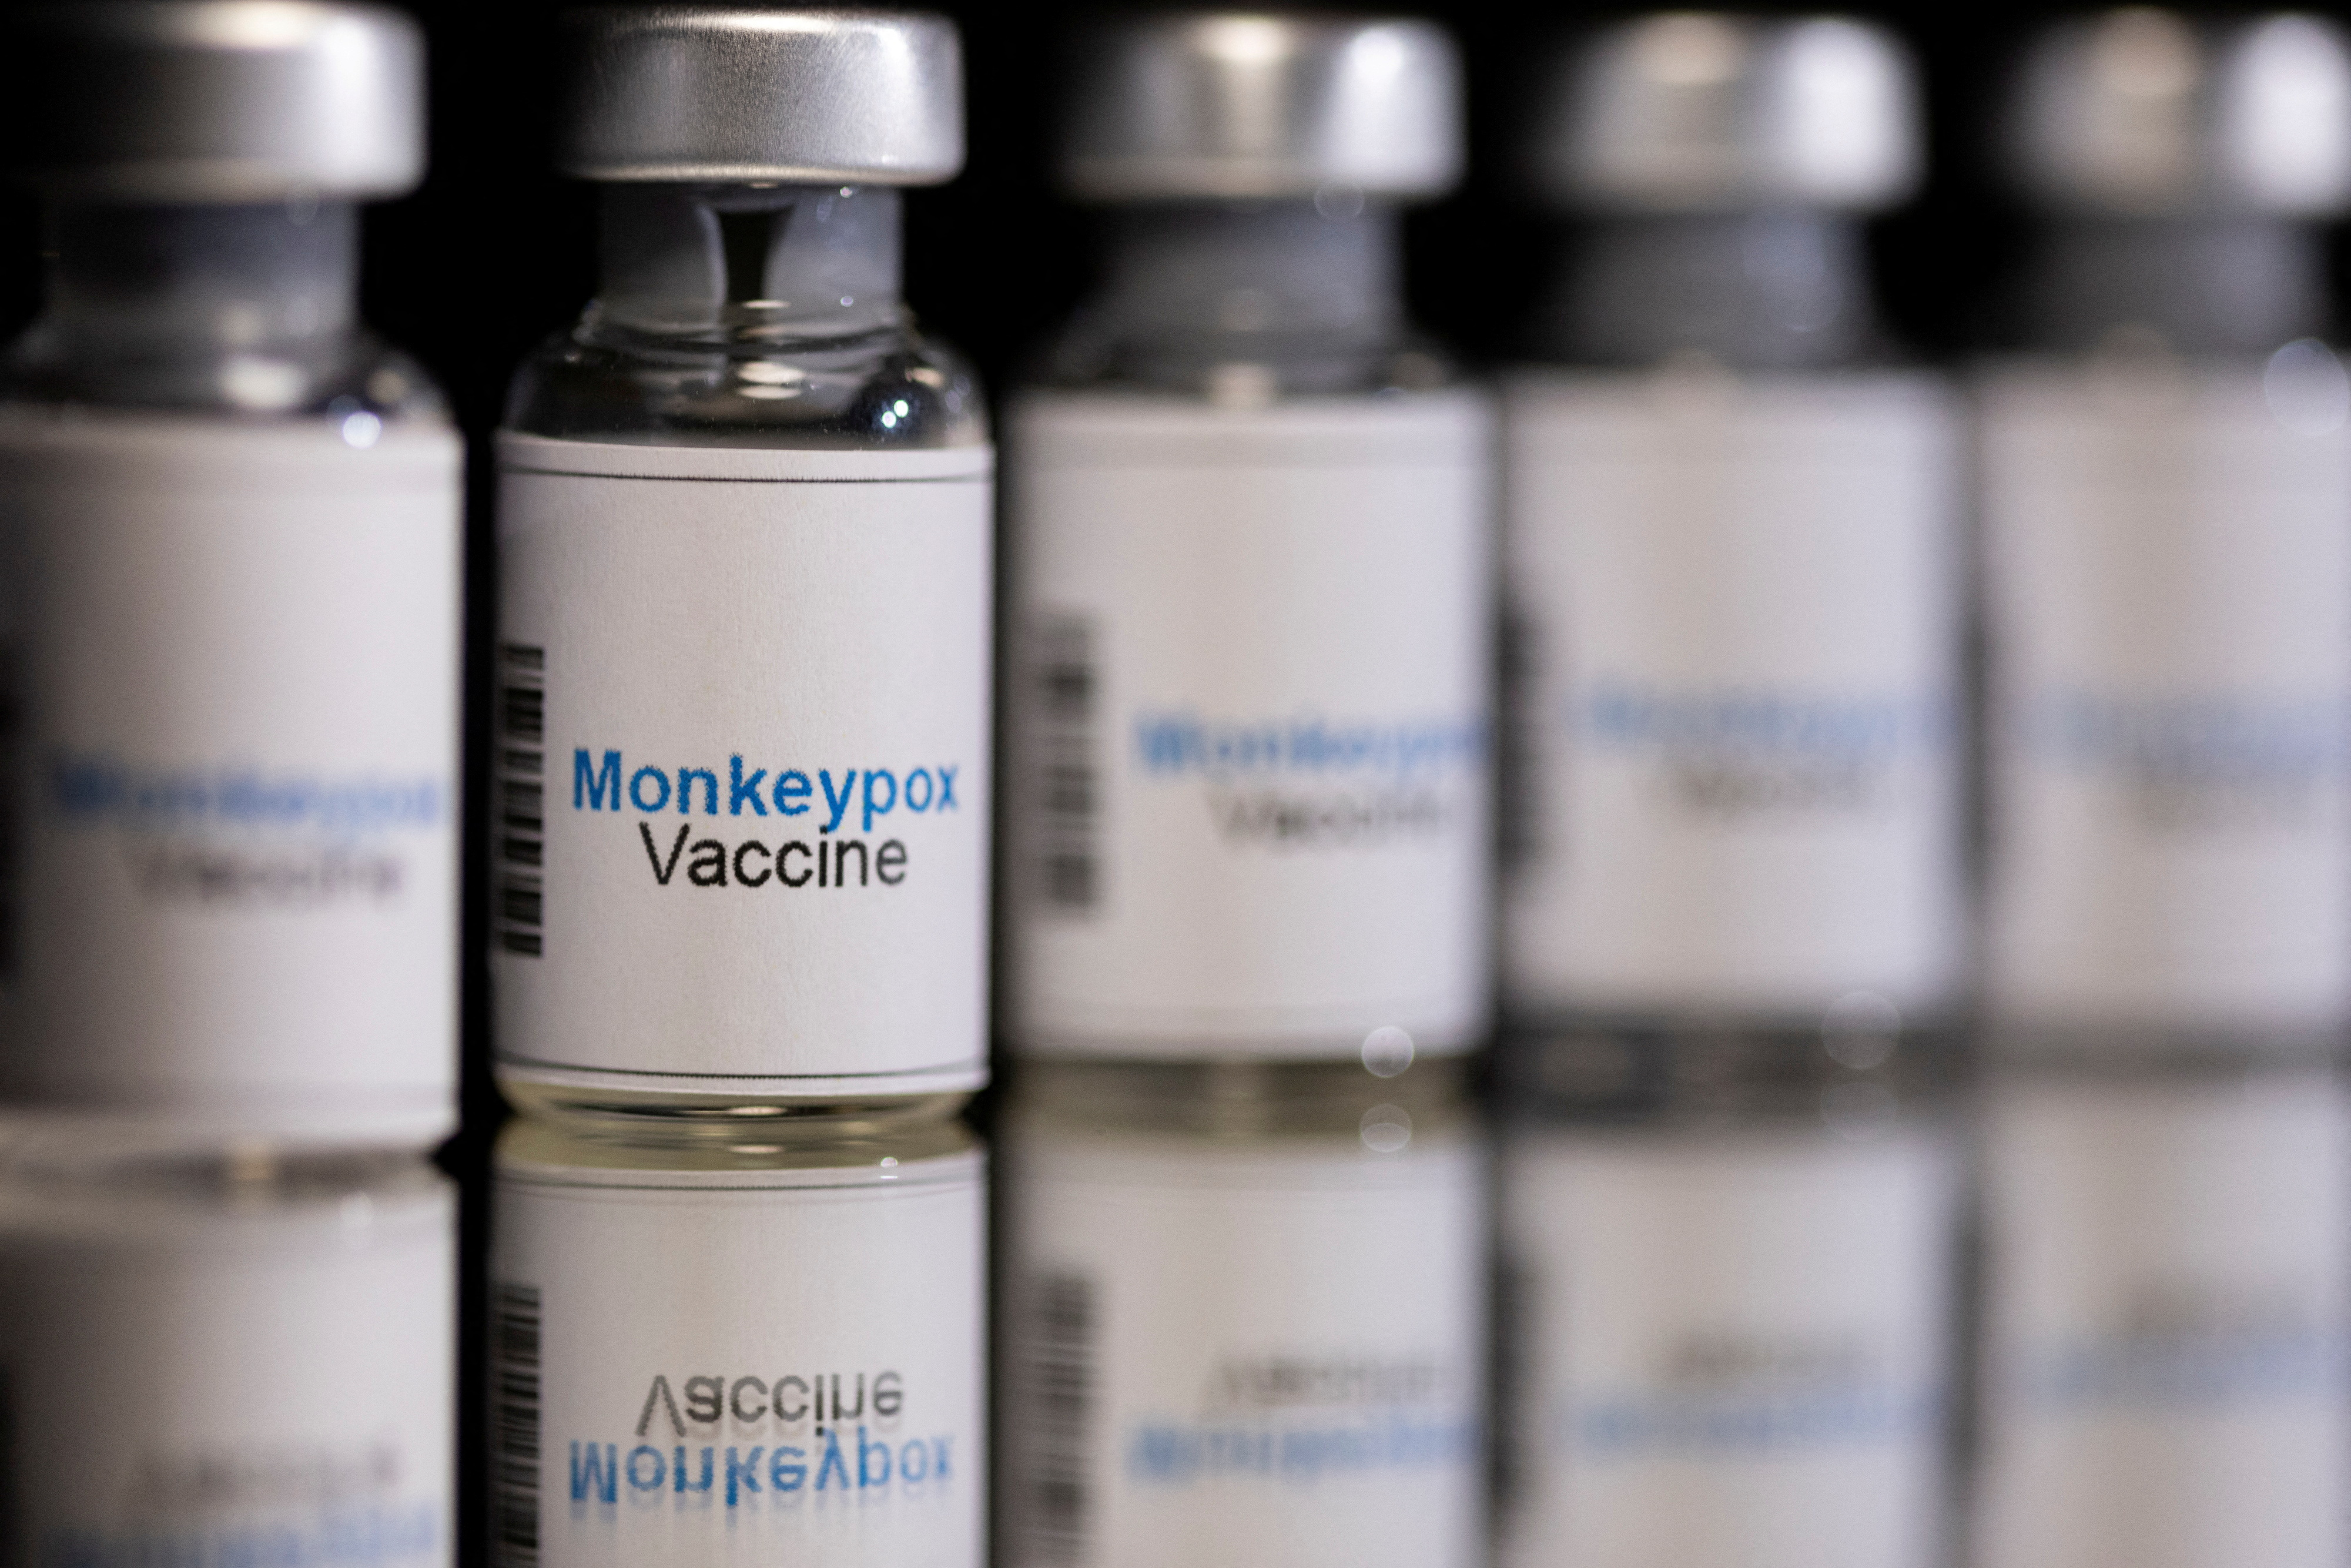 Illustration shows mock-up vials labeled 